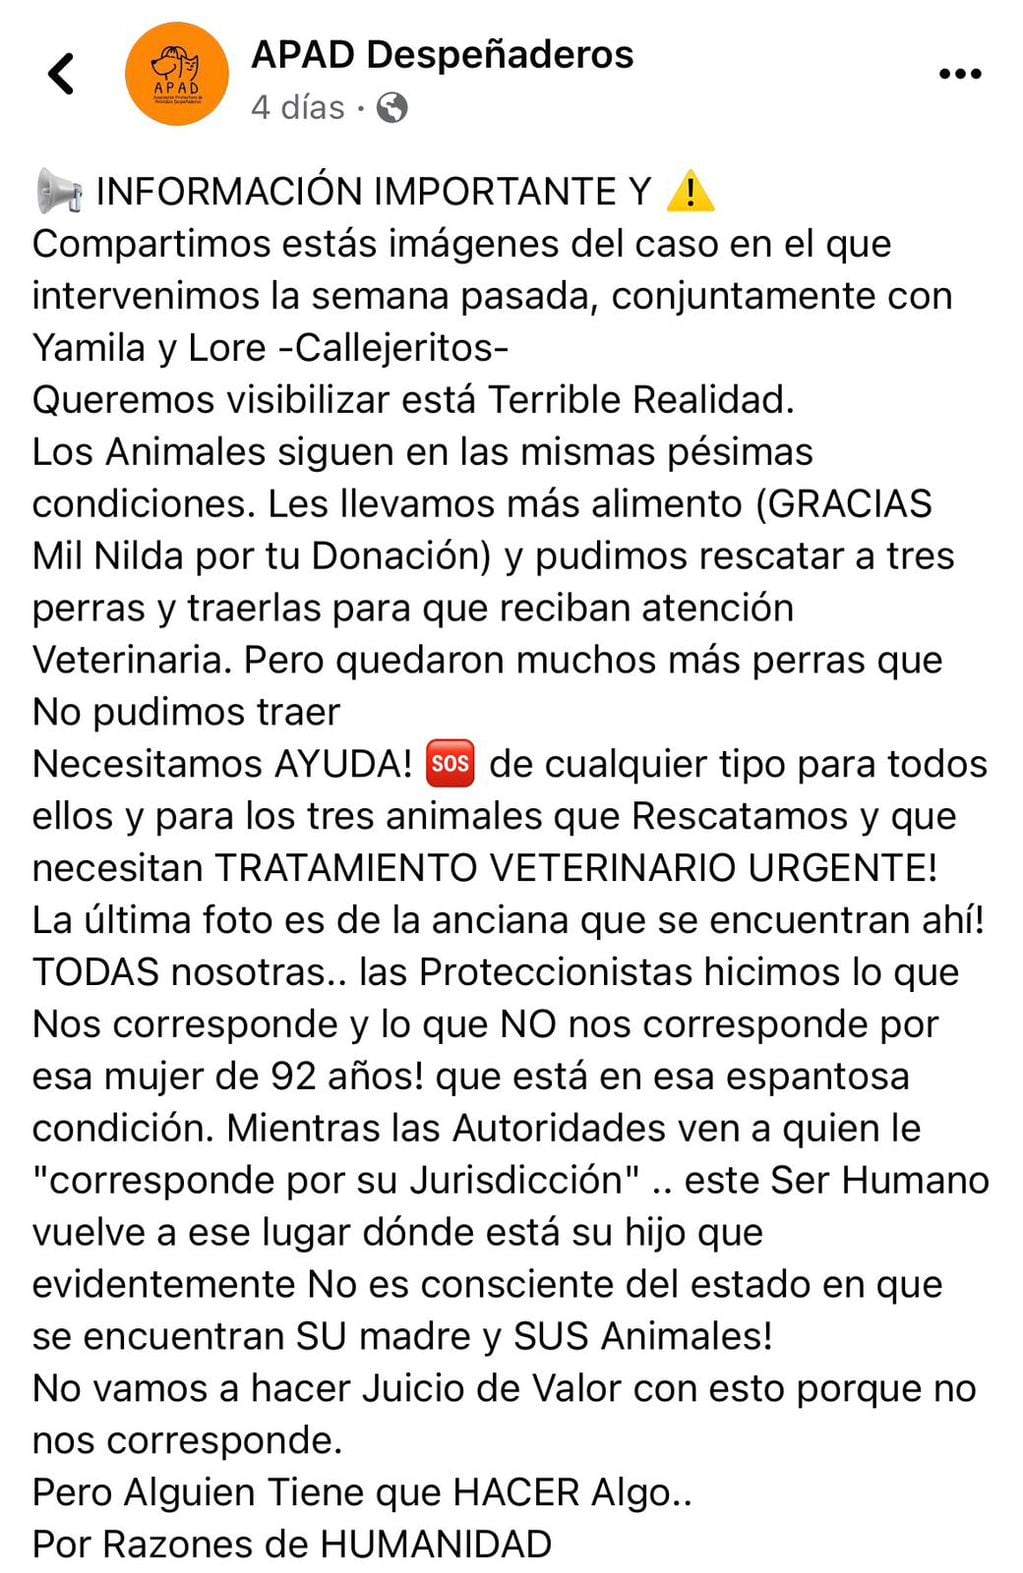 Posteo en Facebook de la Asociación Protectora de Animales de Despeñaderos (APAD).